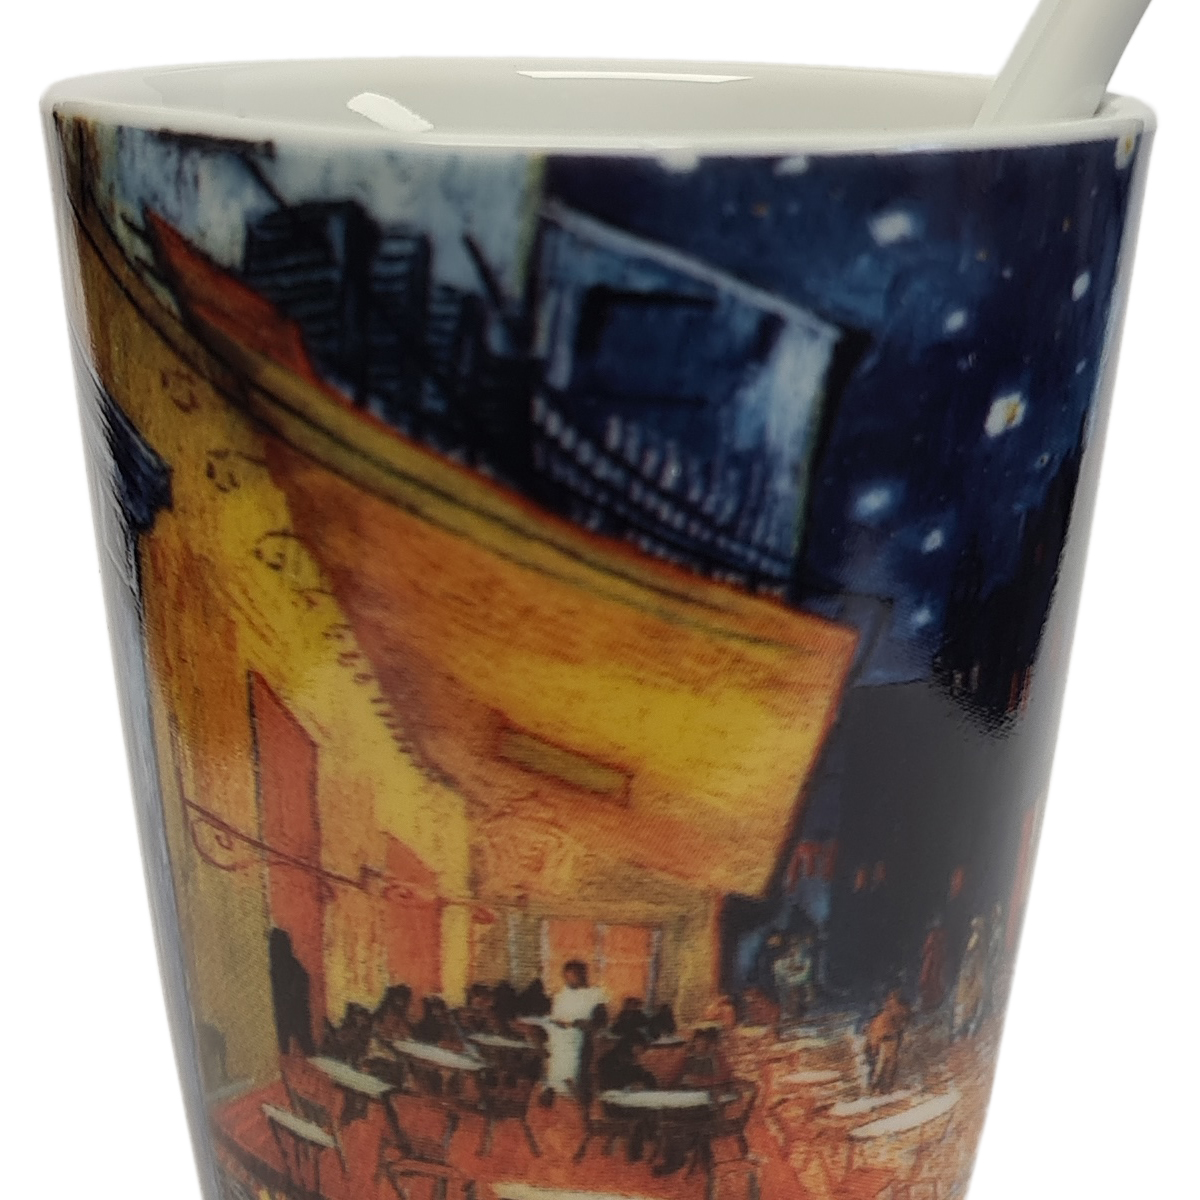 Cup espresso Van Gogh